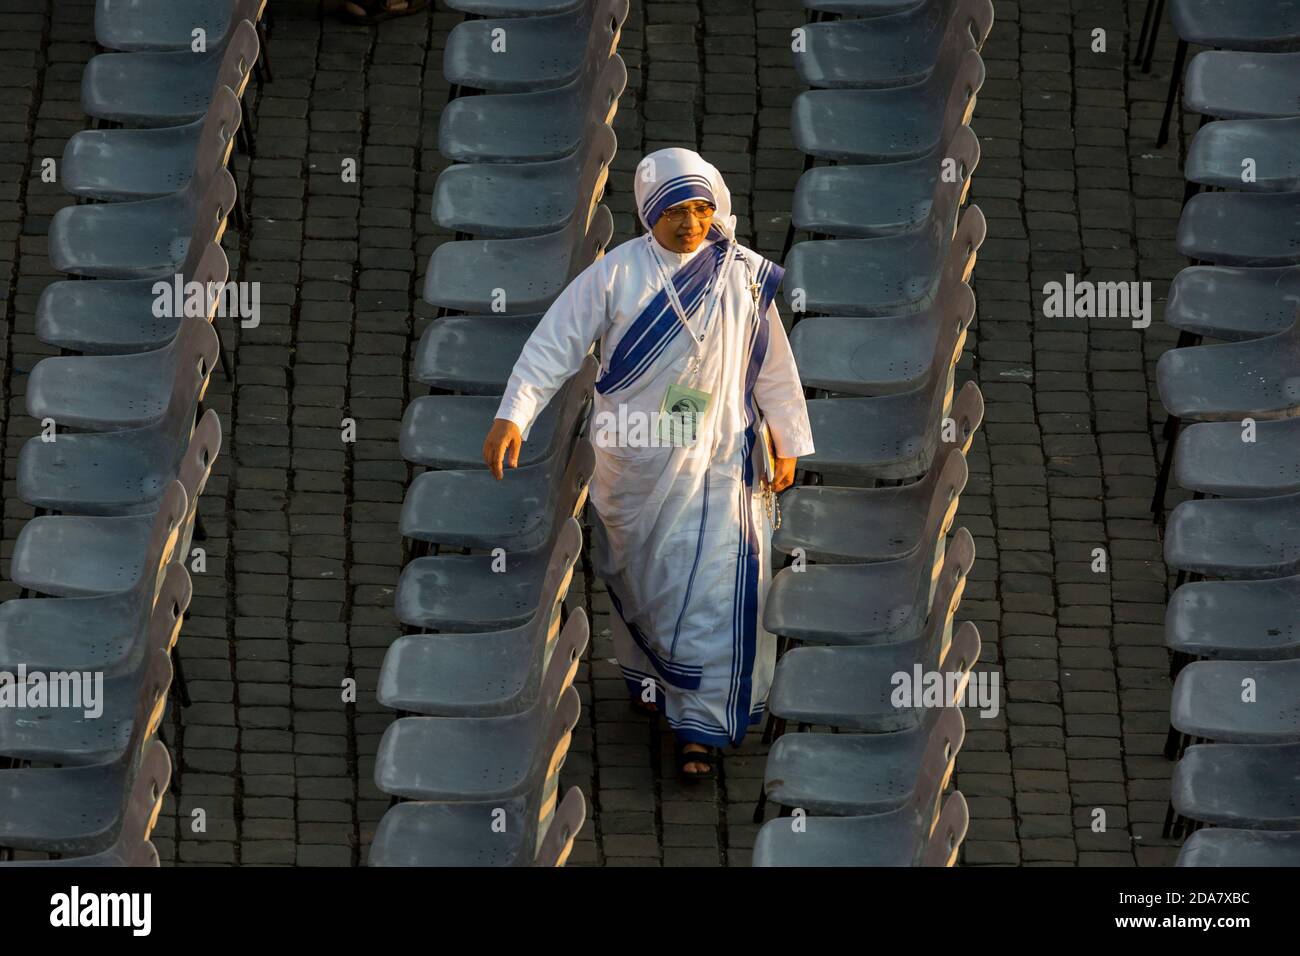 Une nonne de l'ordre de mère Thérèse de Calcutta Marche entre les rangées de sièges vides sur la place Saint Peters Banque D'Images